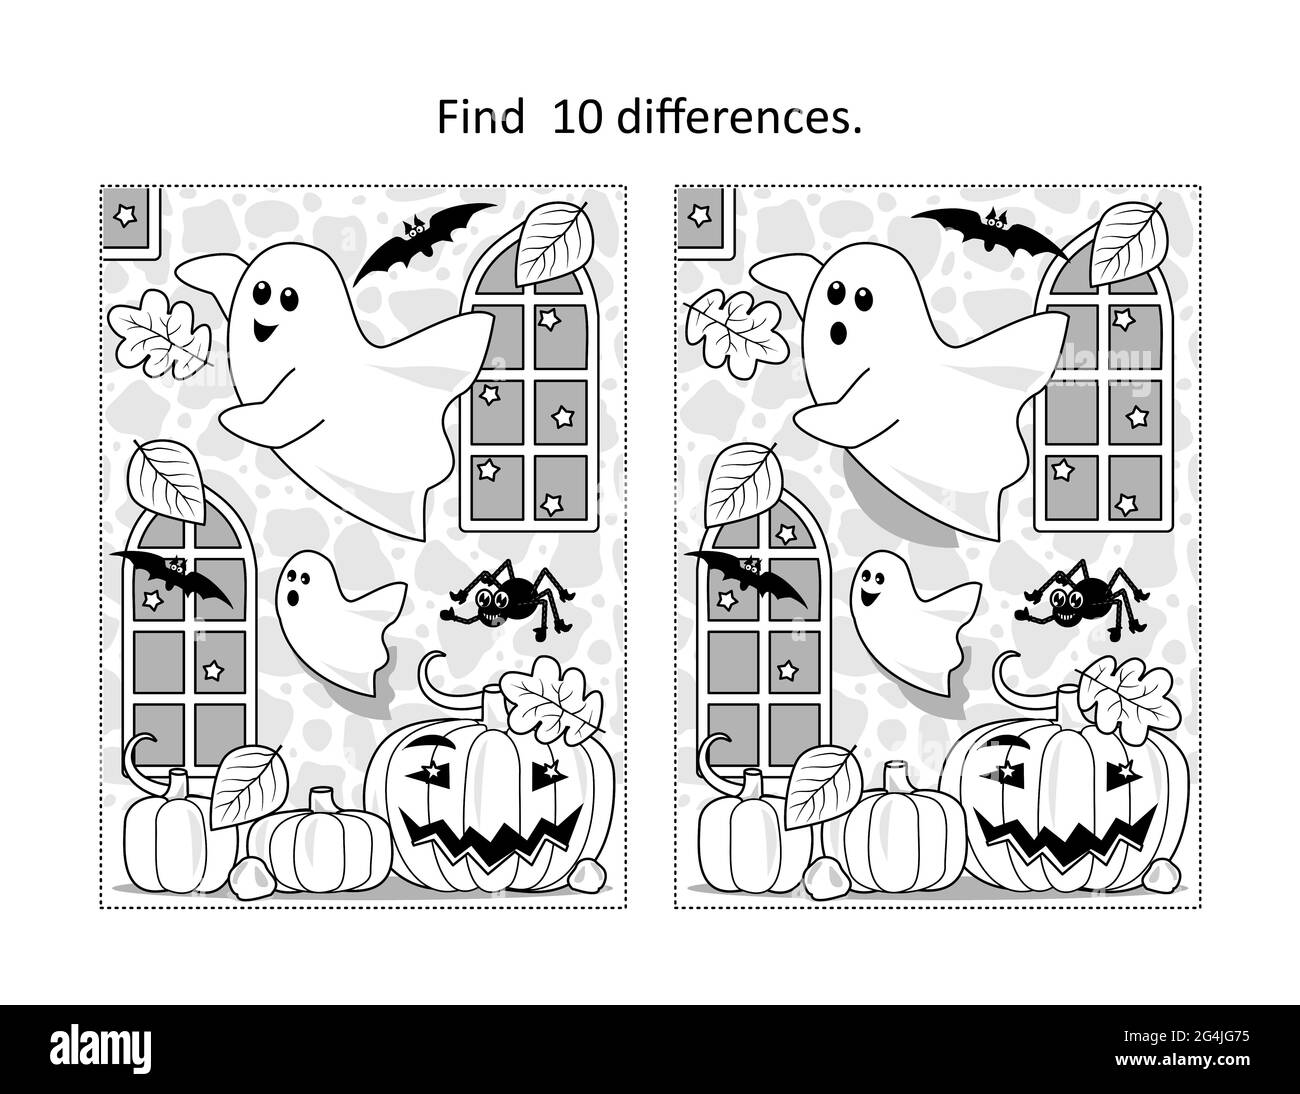 Trouvez 10 différences visuel puzzle et coloriage page avec Halloween fantômes jouant dans l'intérieur de château ancien Banque D'Images